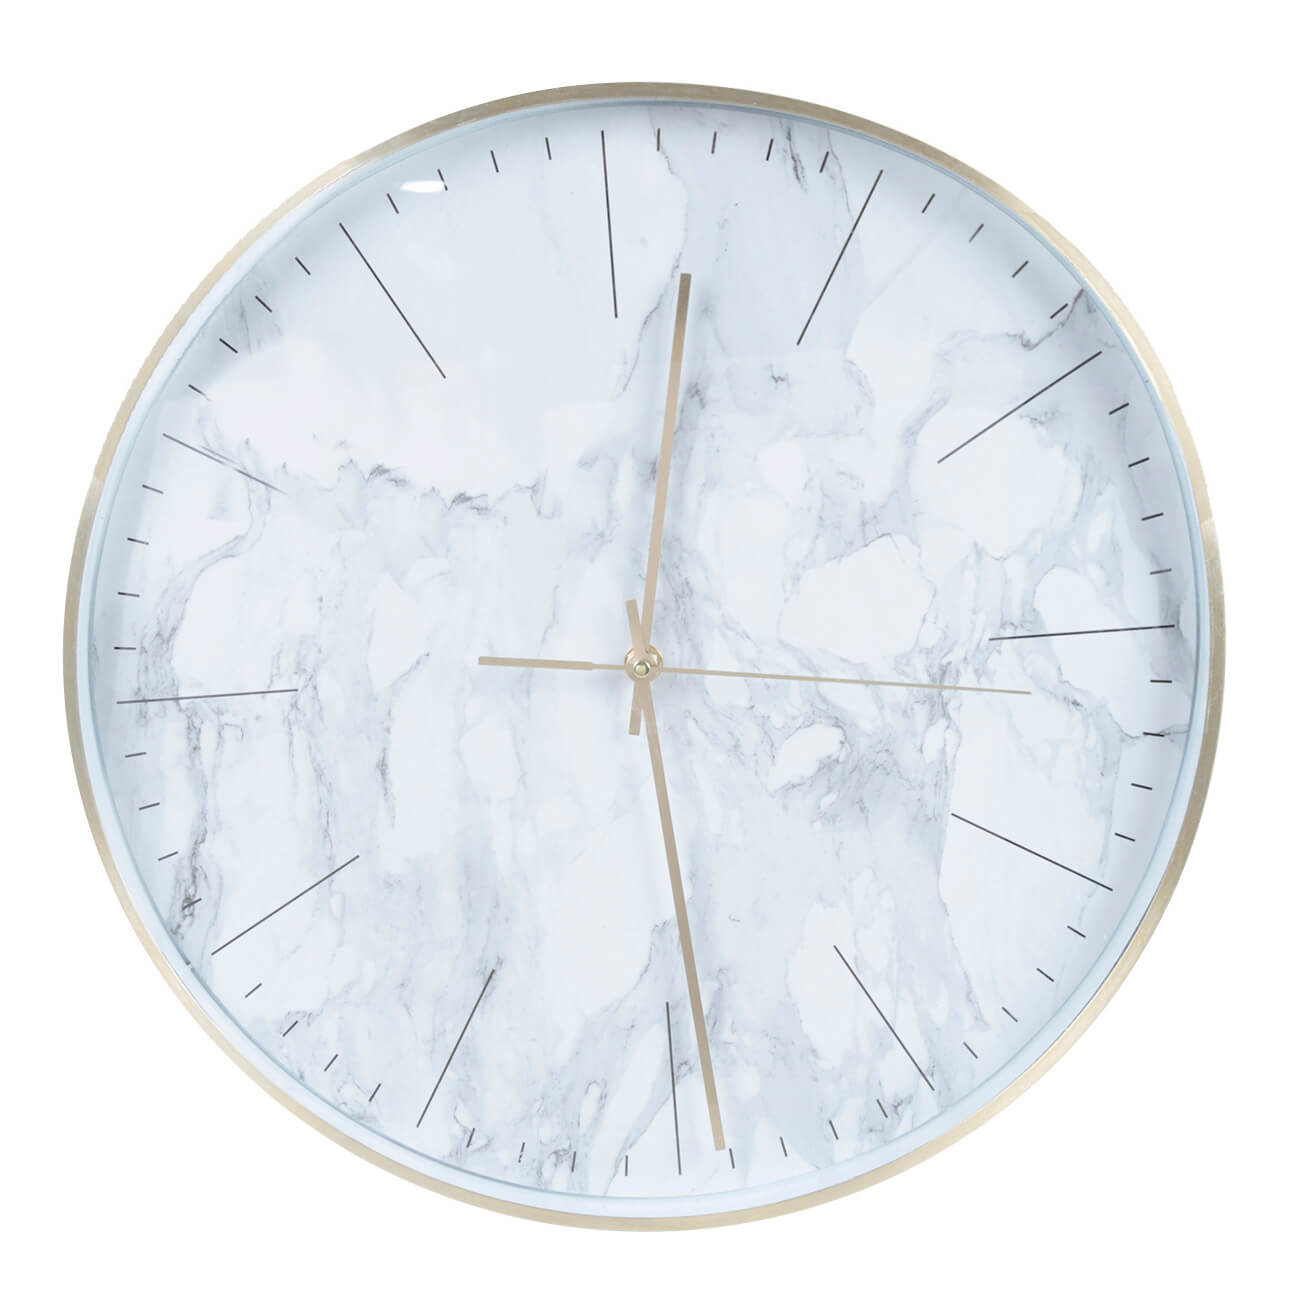 Часы настенные, 40 см, пластик/стекло, круглые, белые, Мрамор, Maniera круглые настенные часы